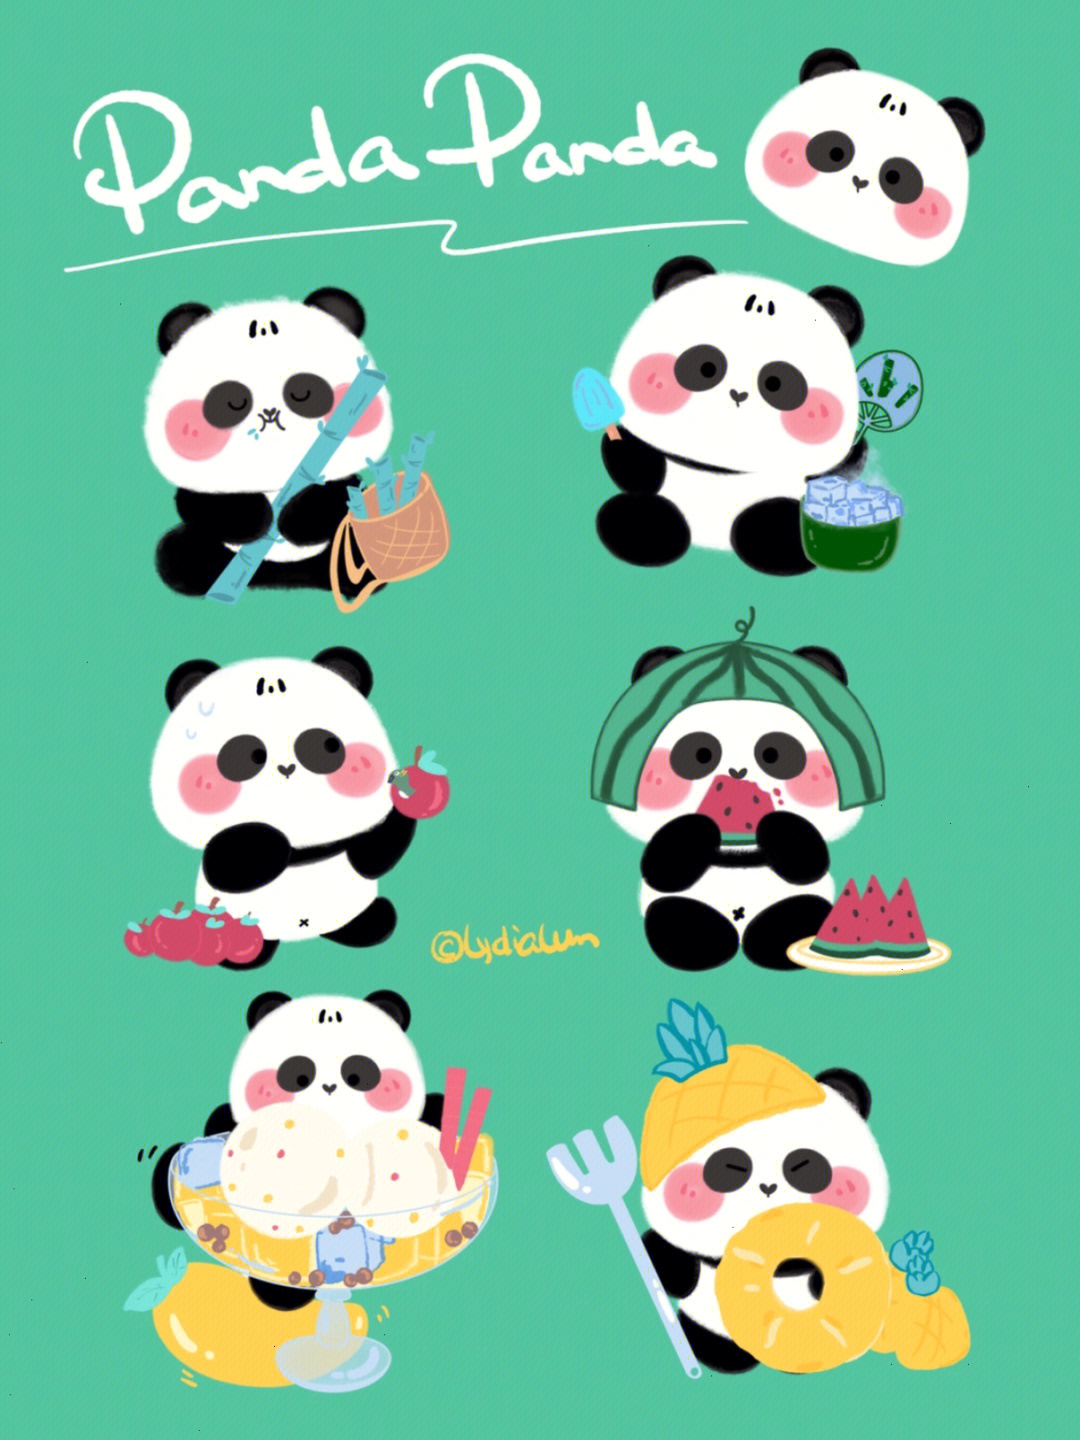 熊猫绘画笔刷素材下载图片